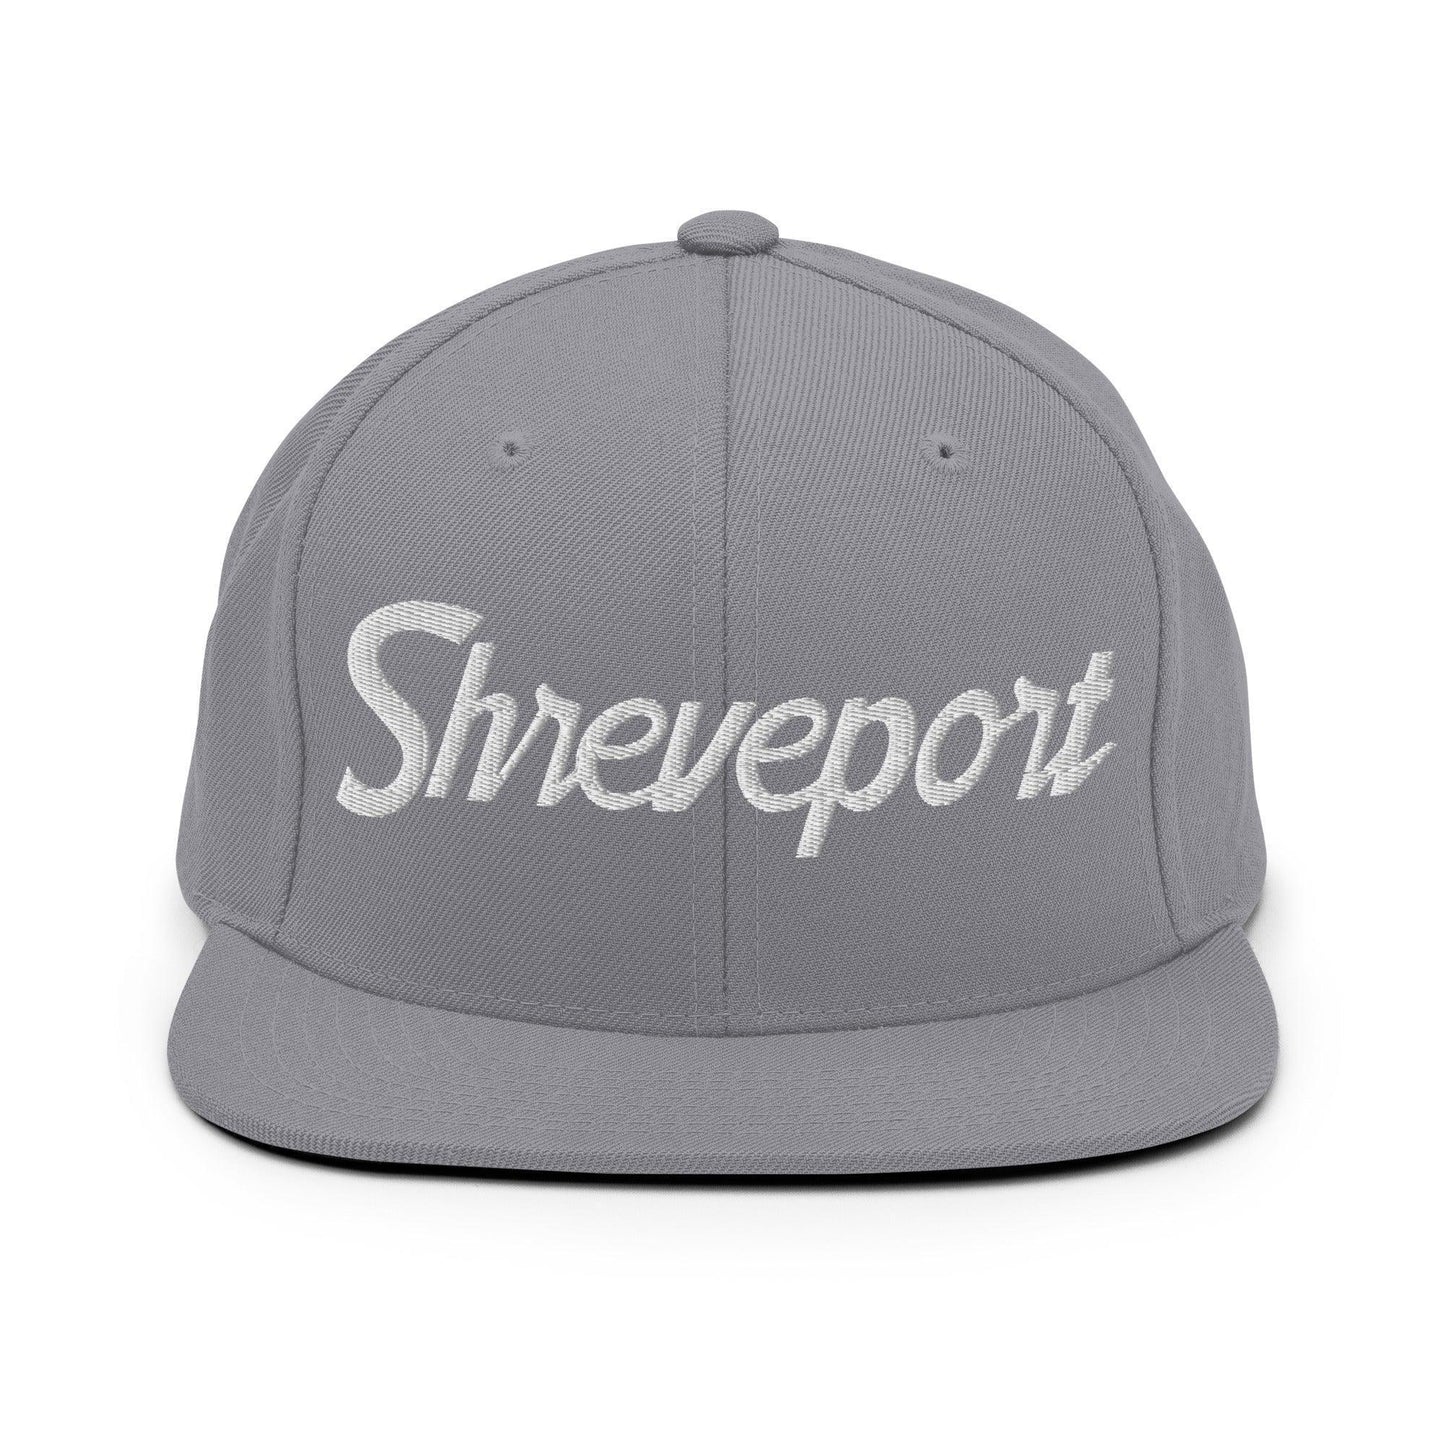 Shreveport Script Snapback Hat Silver